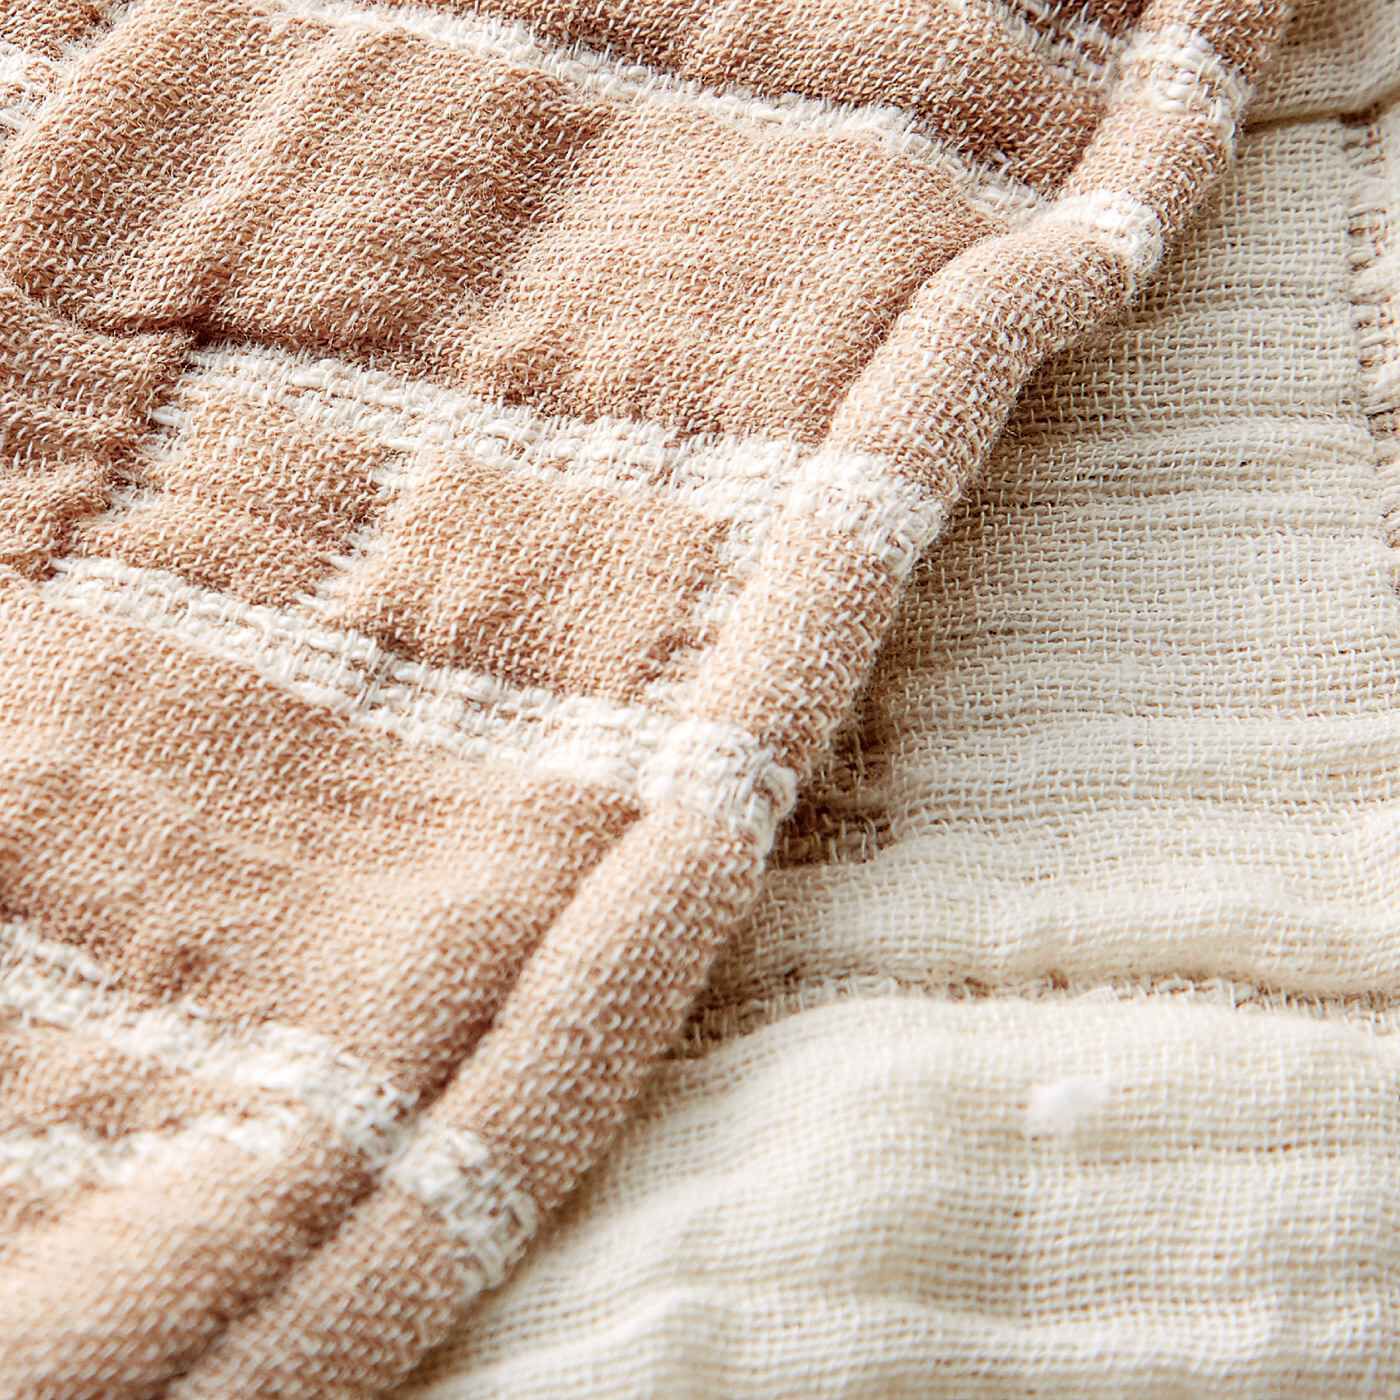 SAANA JA OLLI|サーナ ヤ オッリ　6重ガーゼに織り上げた ふんわりコットンガーゼケット〈ハウス オブ ドリーミング/サンドベージュ〉|日本の職人技が生きる織り　三河木綿という愛知県で有名なしっかり厚みのある織物。職人さんが作っています。裏に反転で柄が現れます。